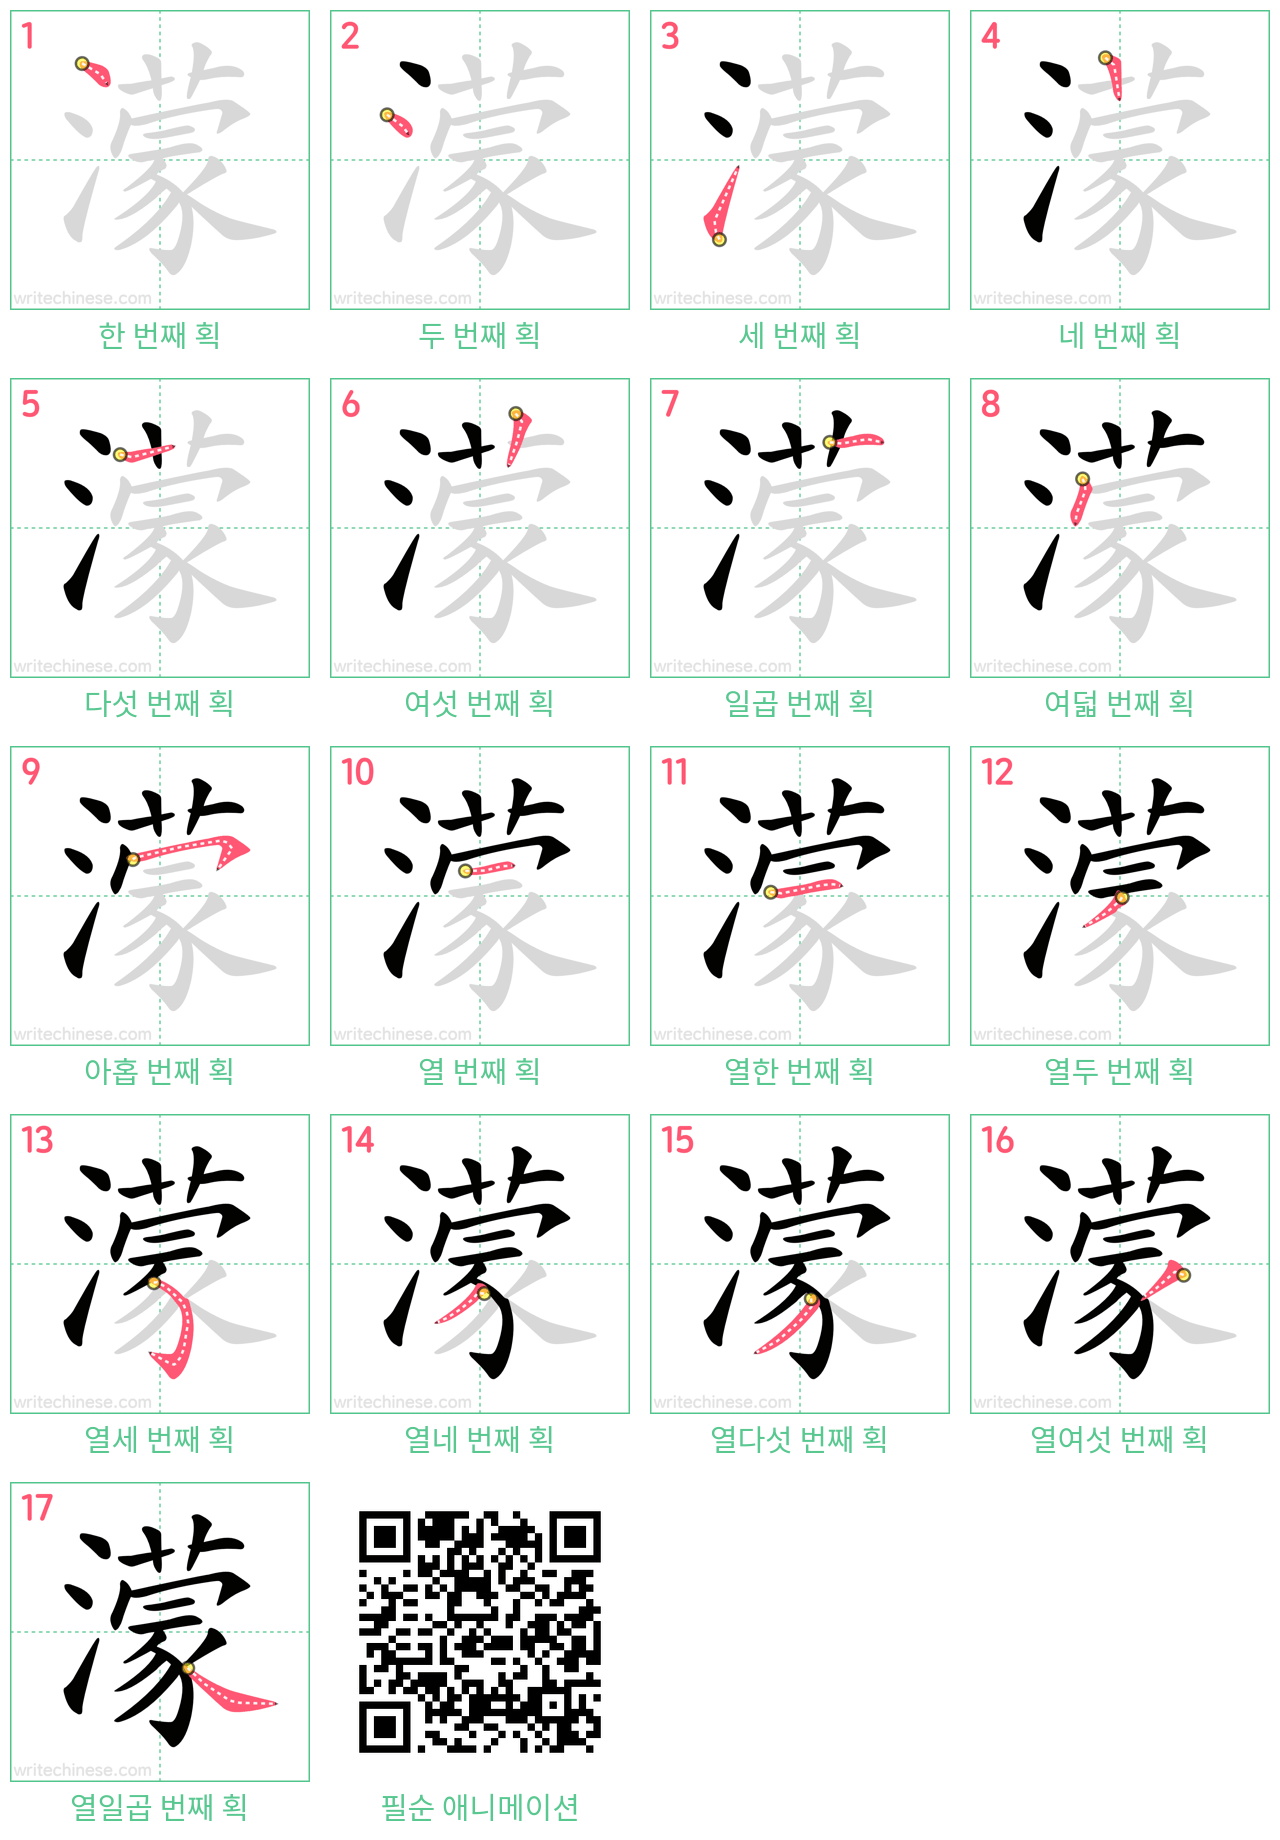 濛 step-by-step stroke order diagrams